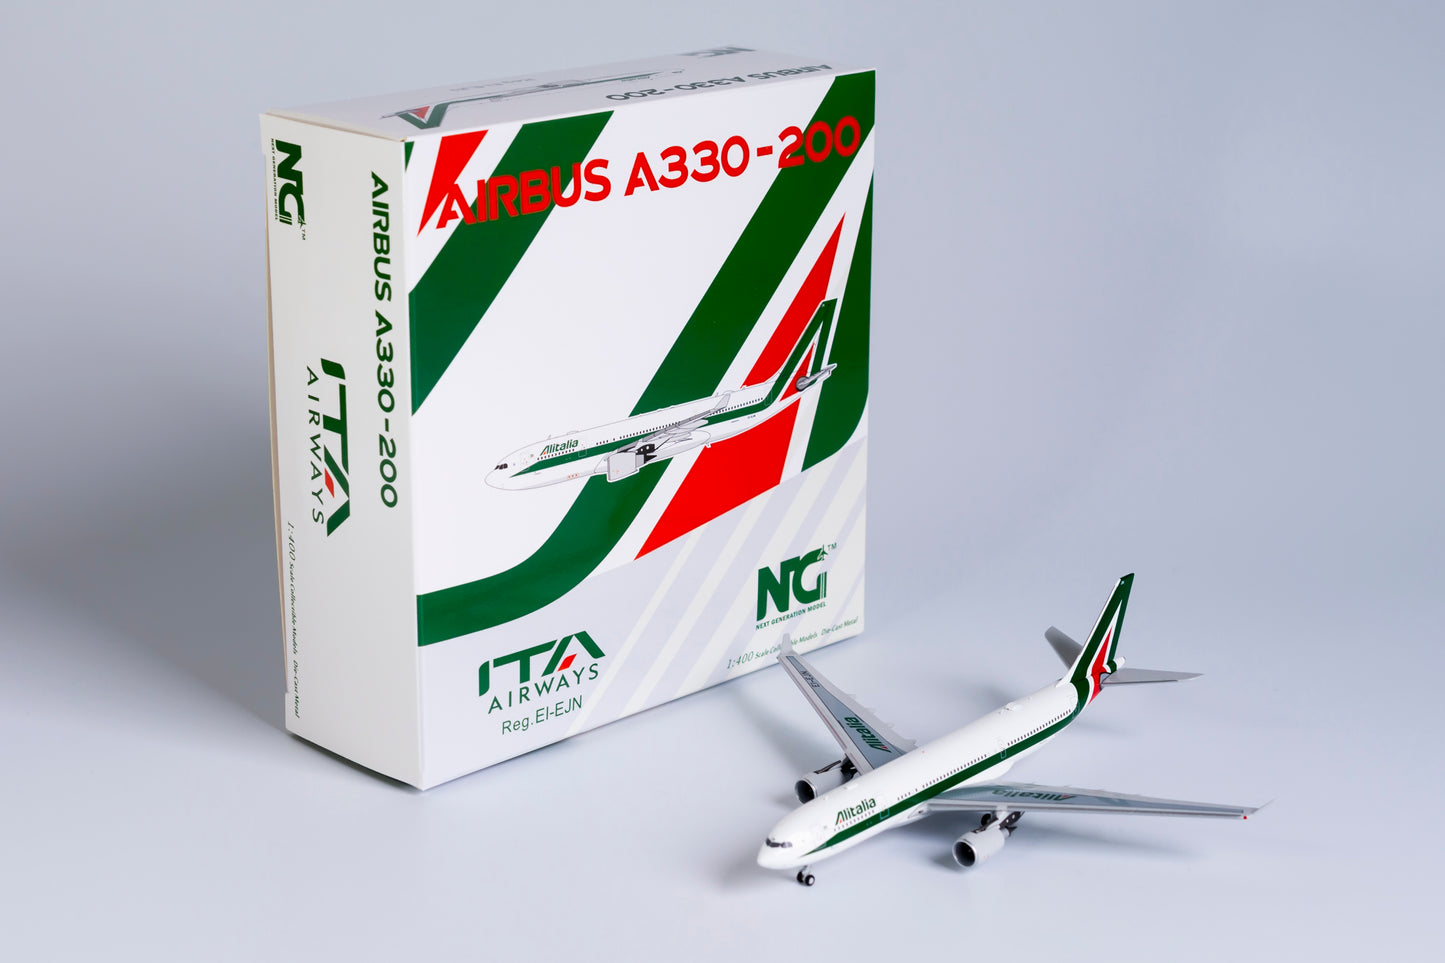 1:400 NG Models ITA Airways (Alitalia) Airbus A330-200 "Operated by ITA Sticker" EI-EJN NG61036